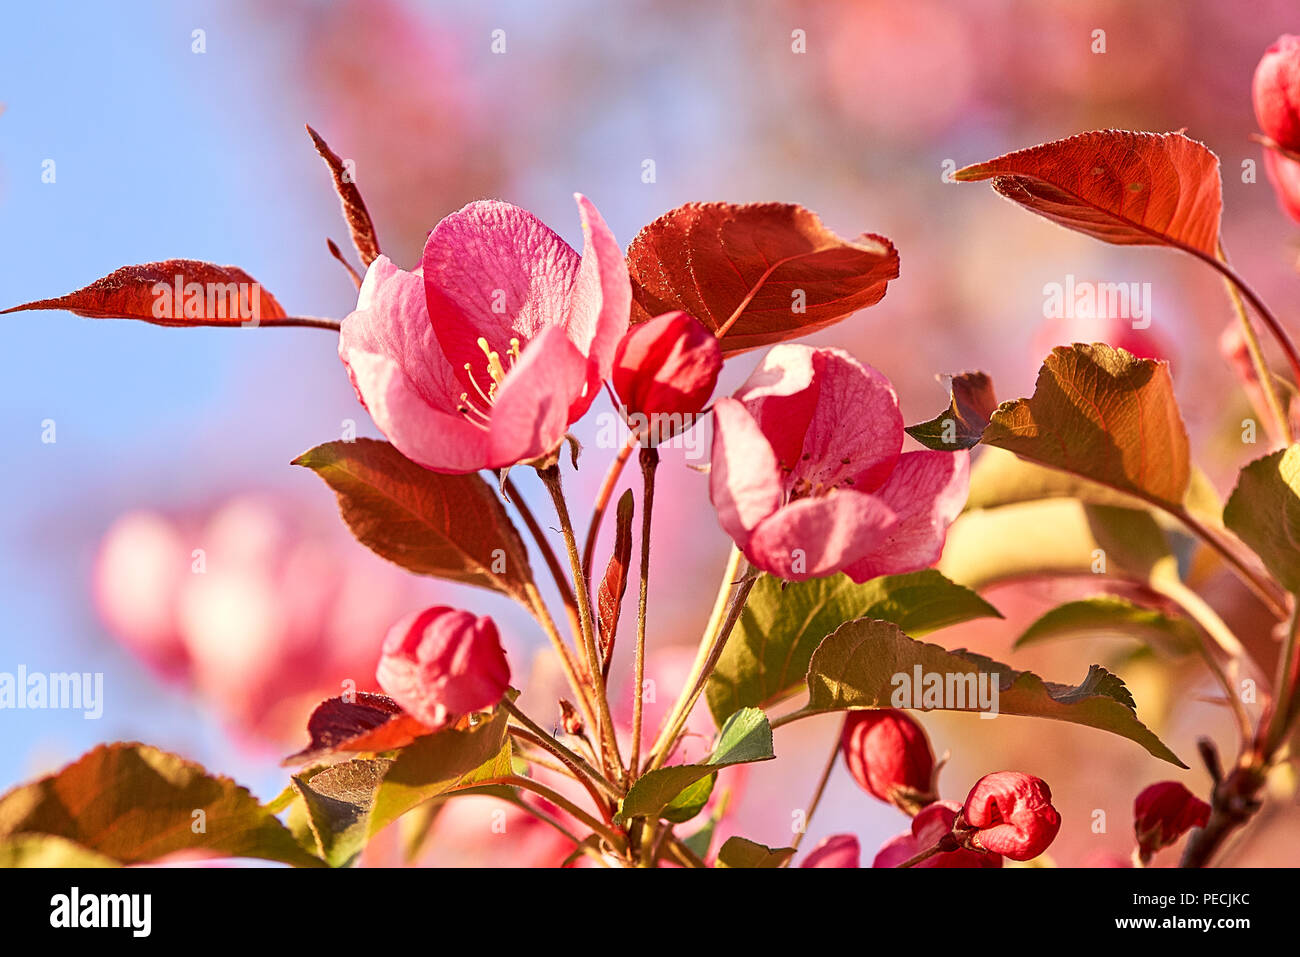 Apple rose fiori, primavera sbocciano i fiori su sfondo blu. Foto Stock